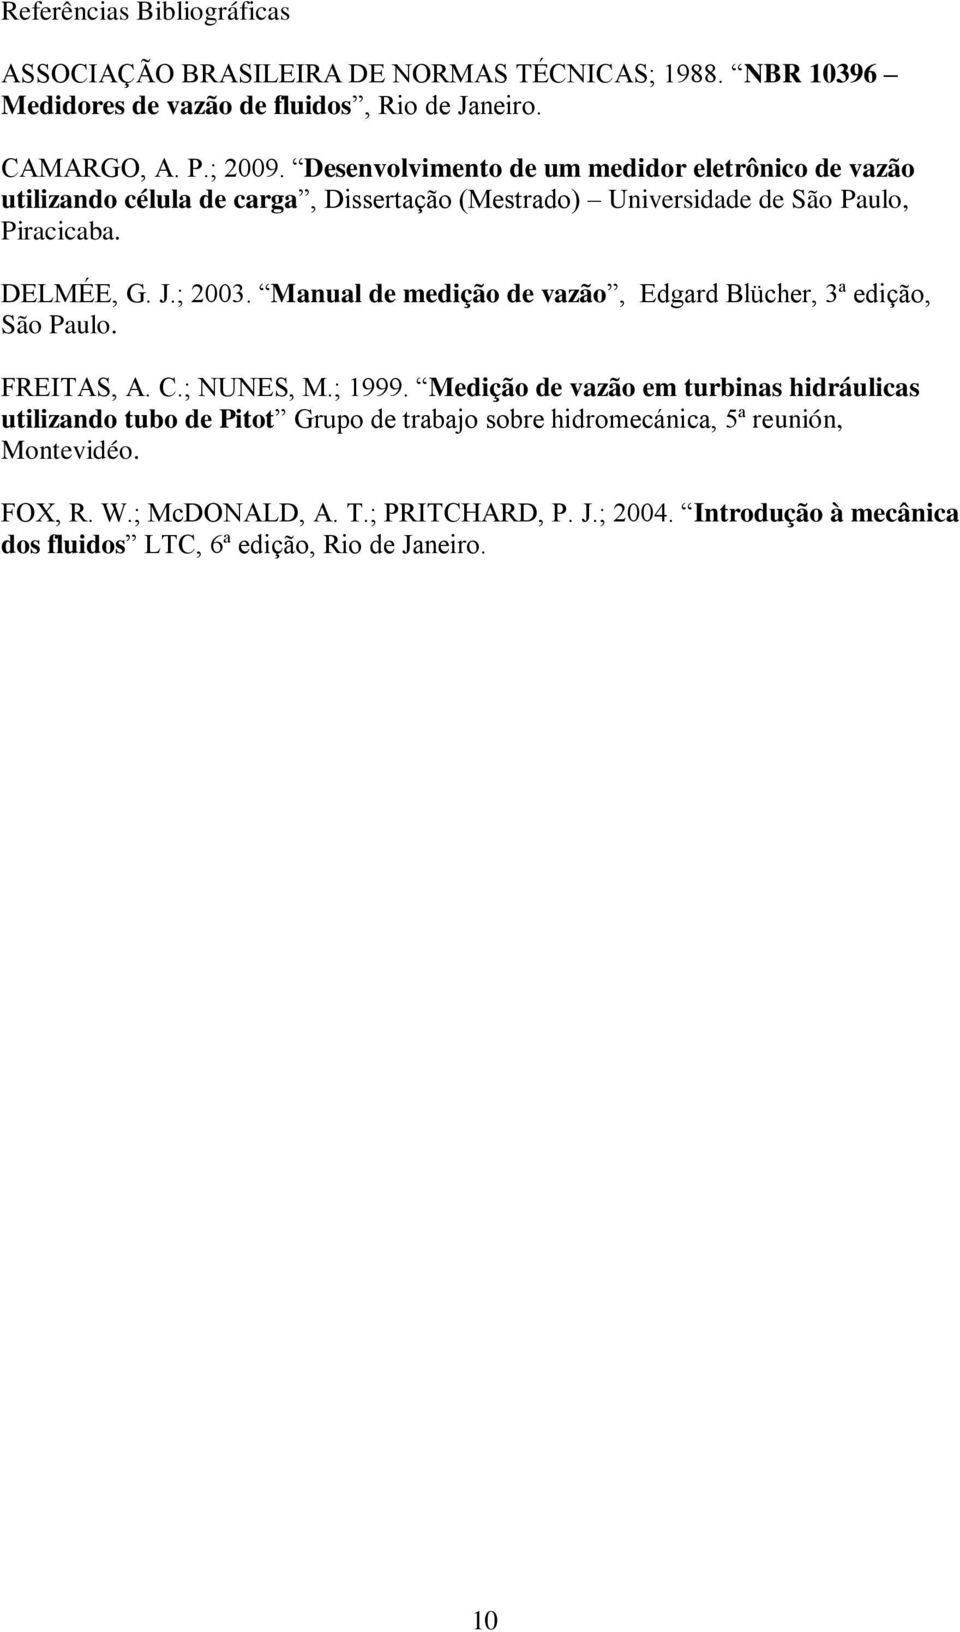 Manual de medição de vazão, Edgard Blücher, 3ª edição, São Paulo. FREITAS, A. C.; NUNES, M.; 1999.